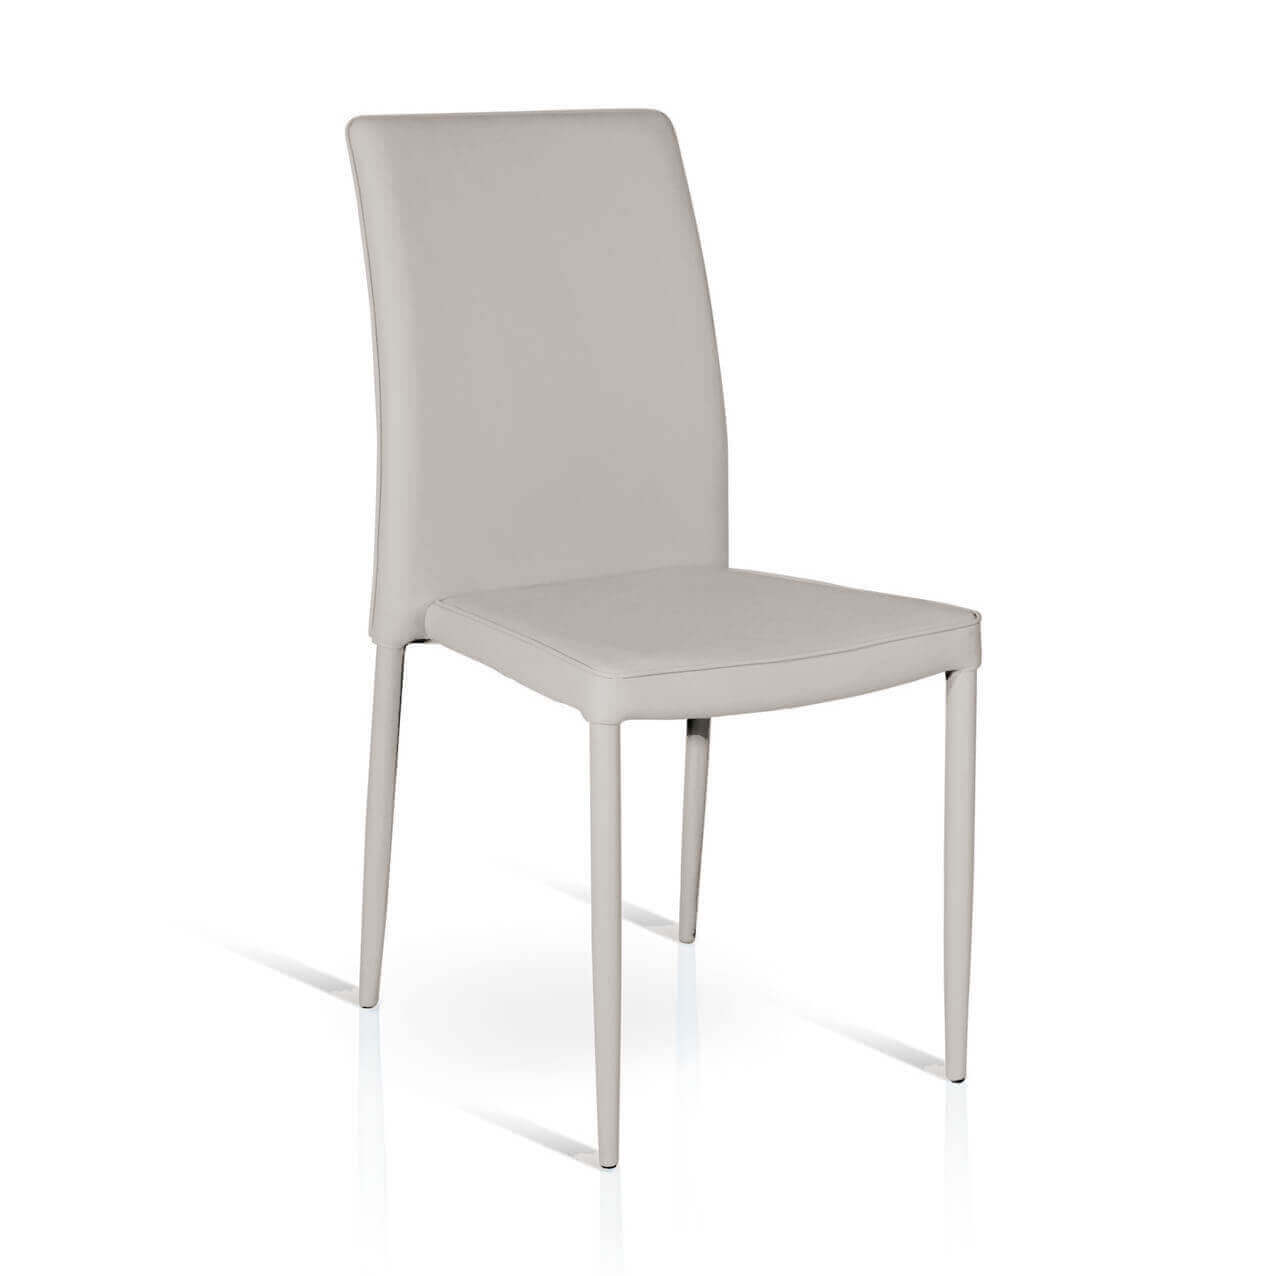 milani home sedia moderna di design in ecopelle grigia chiara per arredo interno casa cucin grigio x x cm